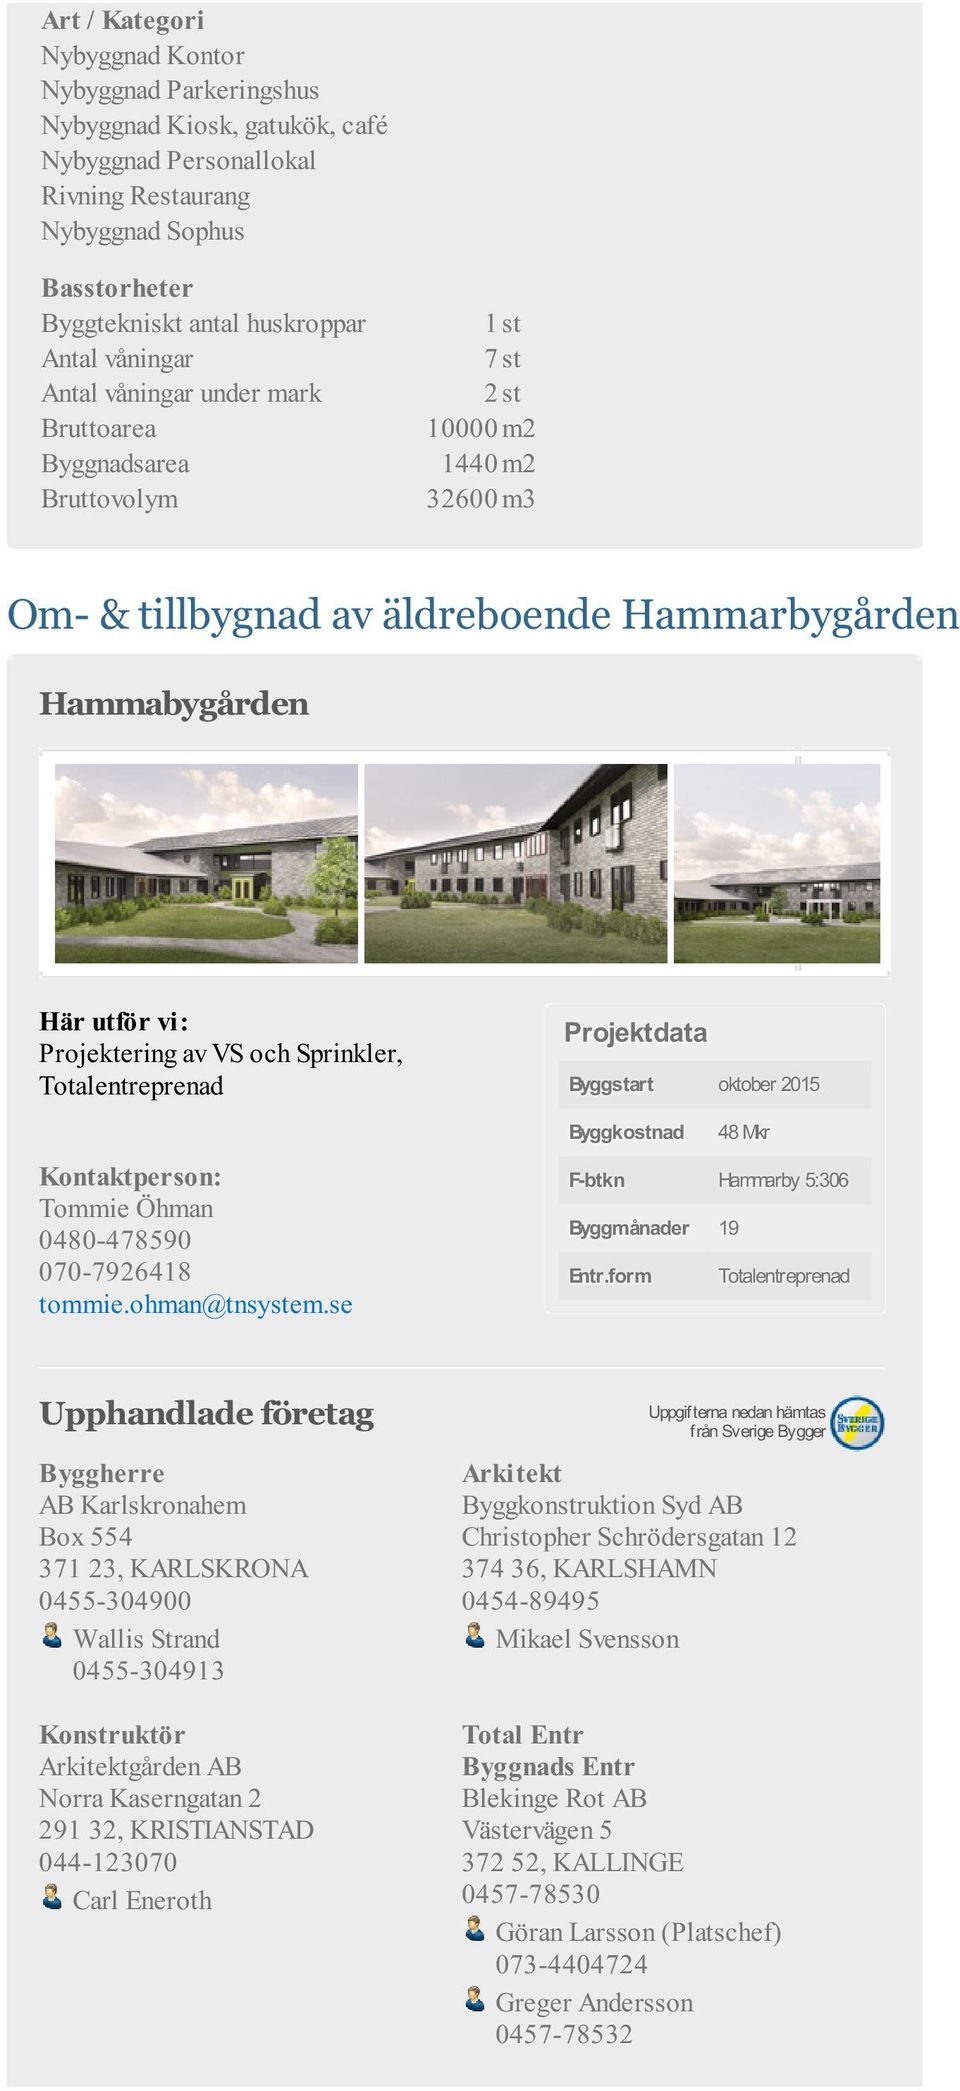 Byggstart oktober 2015 Byggkostnad 48 Mkr F-btkn Hammarby 5:306 Byggmånader 19 Entr.